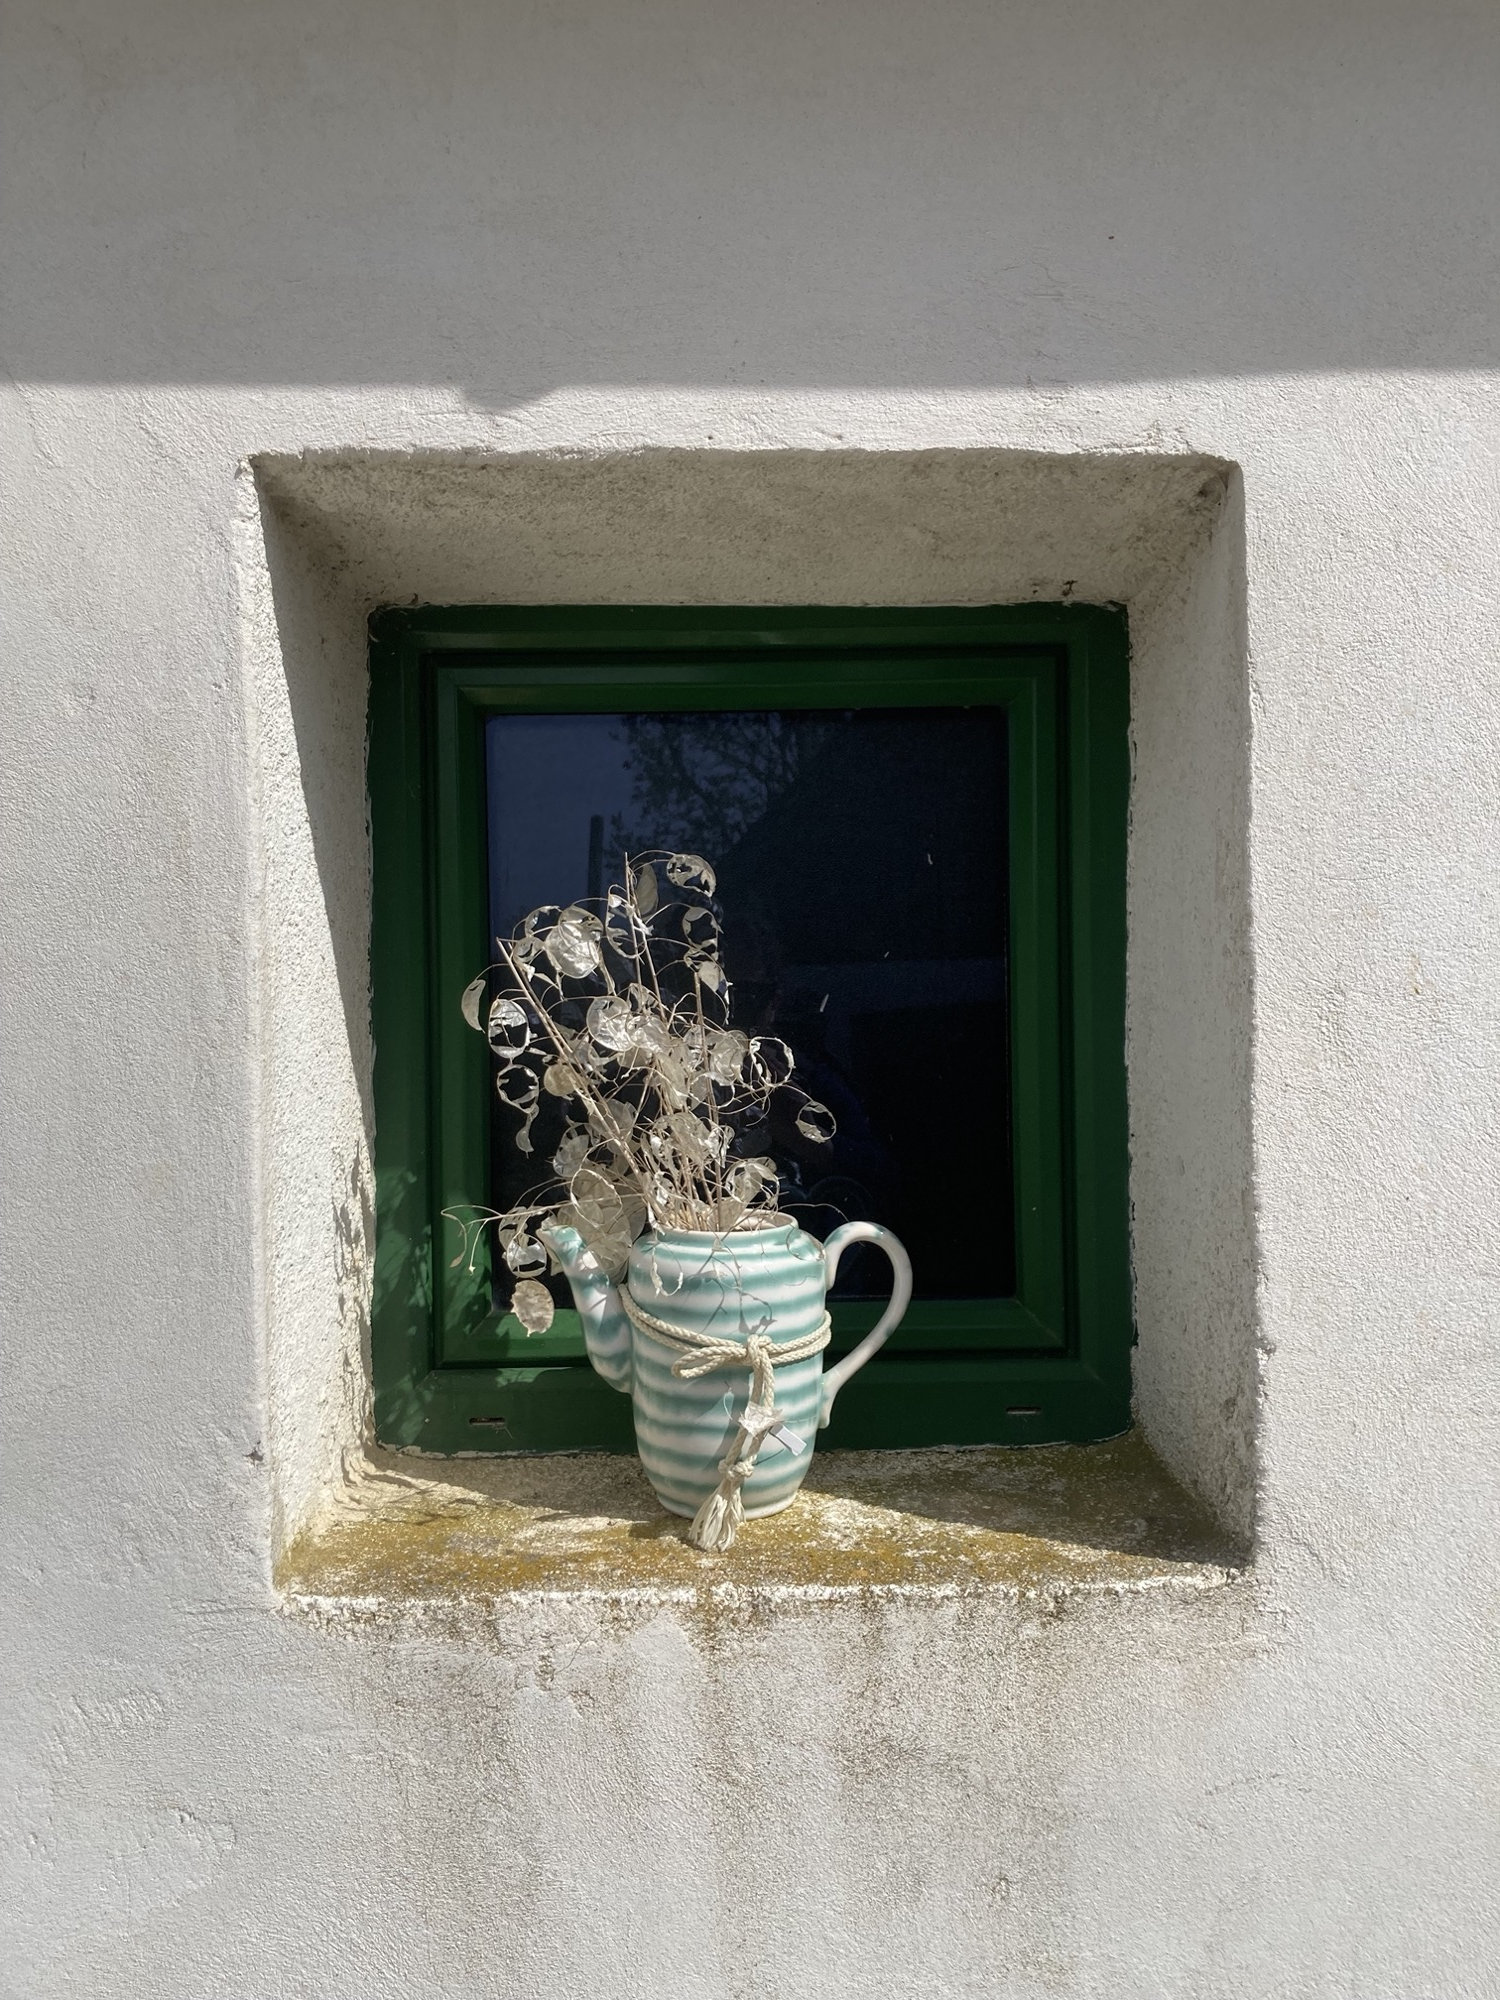 Fensternische eines Weinkellers, als Dekoration steht dort eine Keramikkanne mit getrockneter Pflanze darin